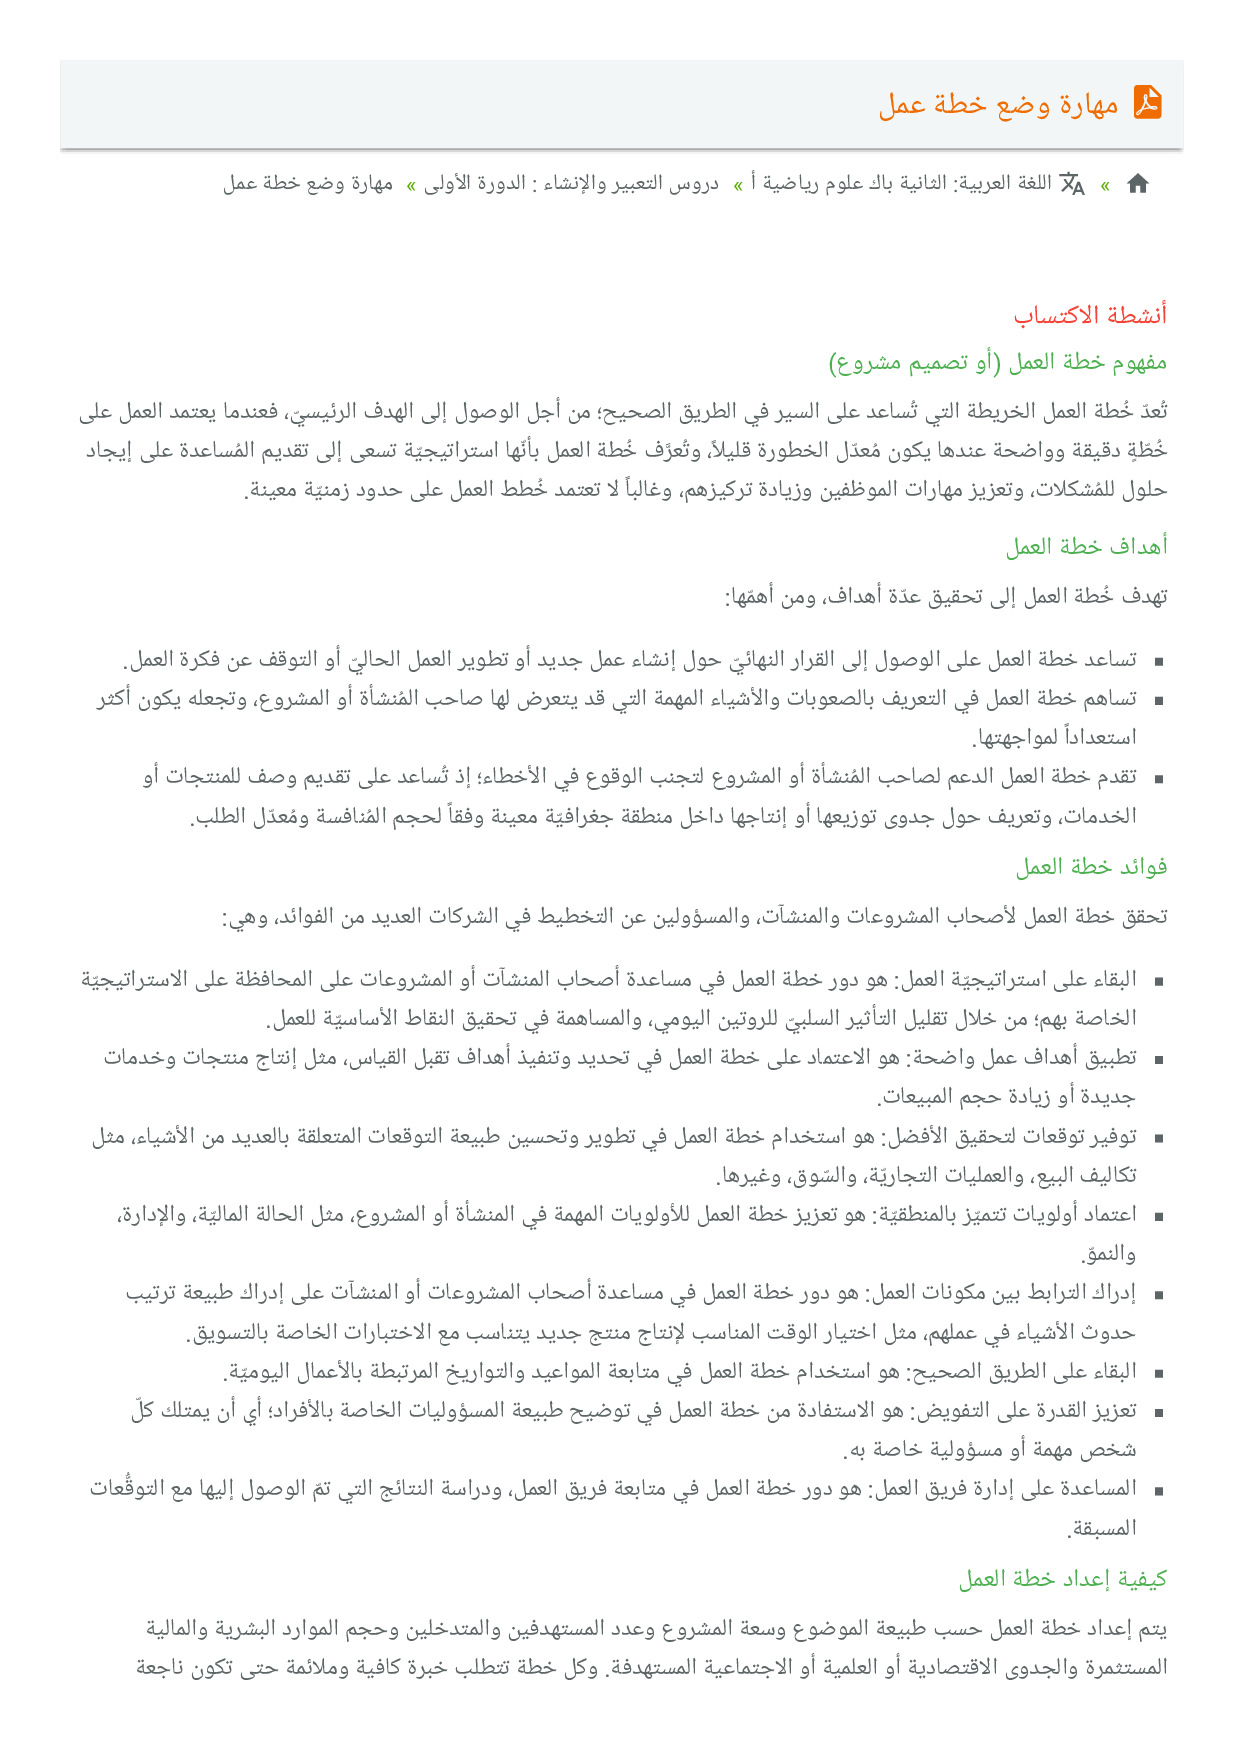 نموذج خطة عمل جاهزة للغة العربية